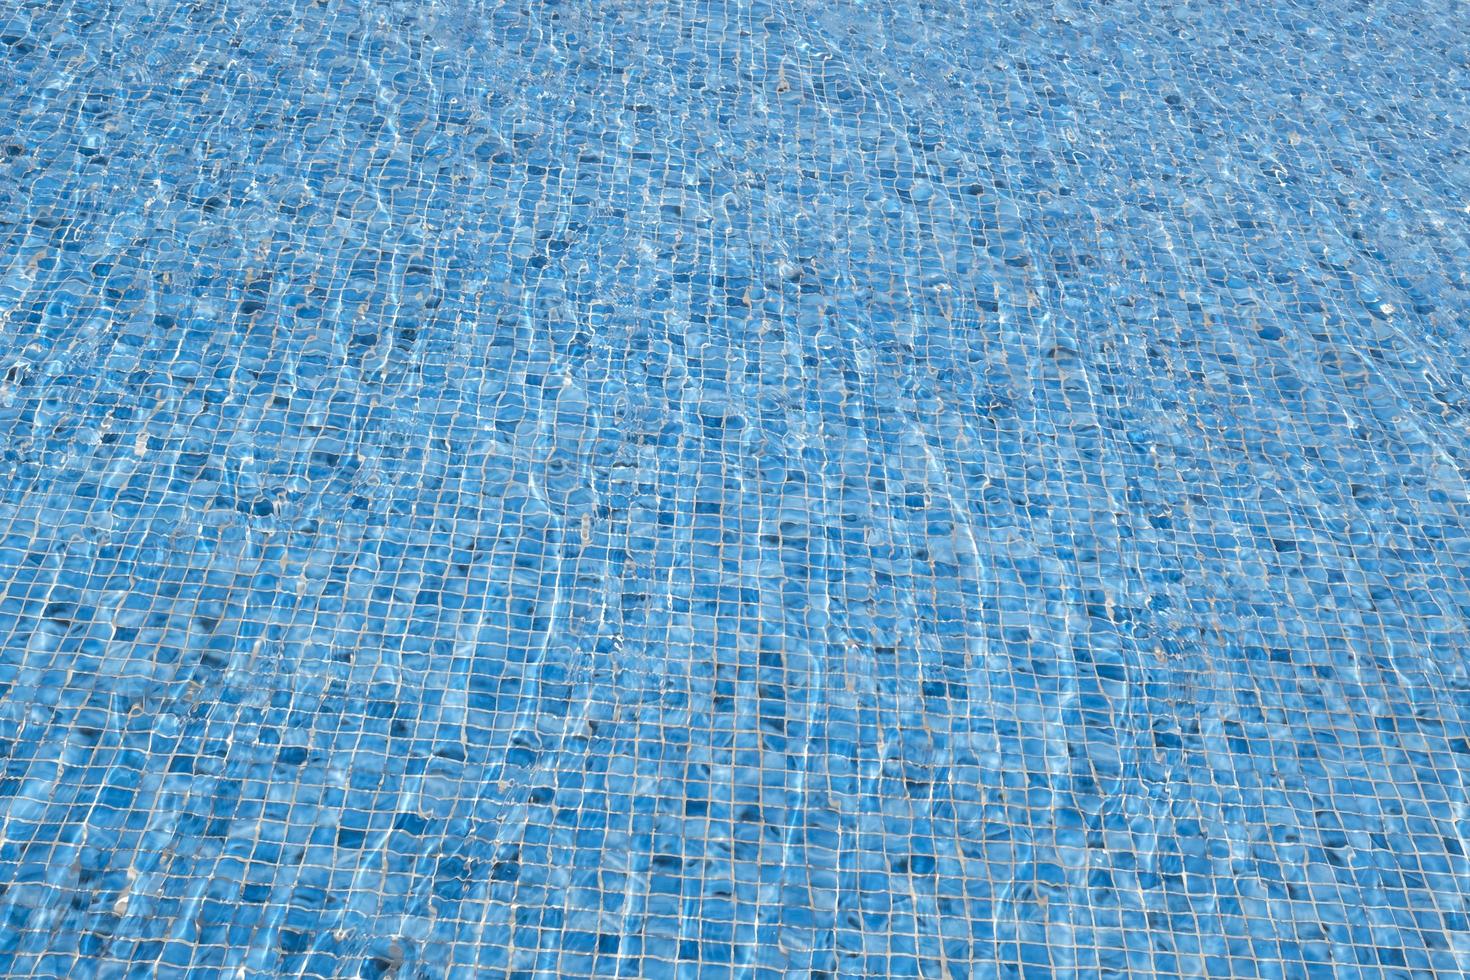 der Wind lässt das Wasser kräuseln. klarer abstrakter hintergrund des oberflächenwassers. blaues schwimmbad, das die sonne reflektiert, kräuselte sich. Muster des Bodens des Pools aus geriffelten blauen Keramikfliesen. foto